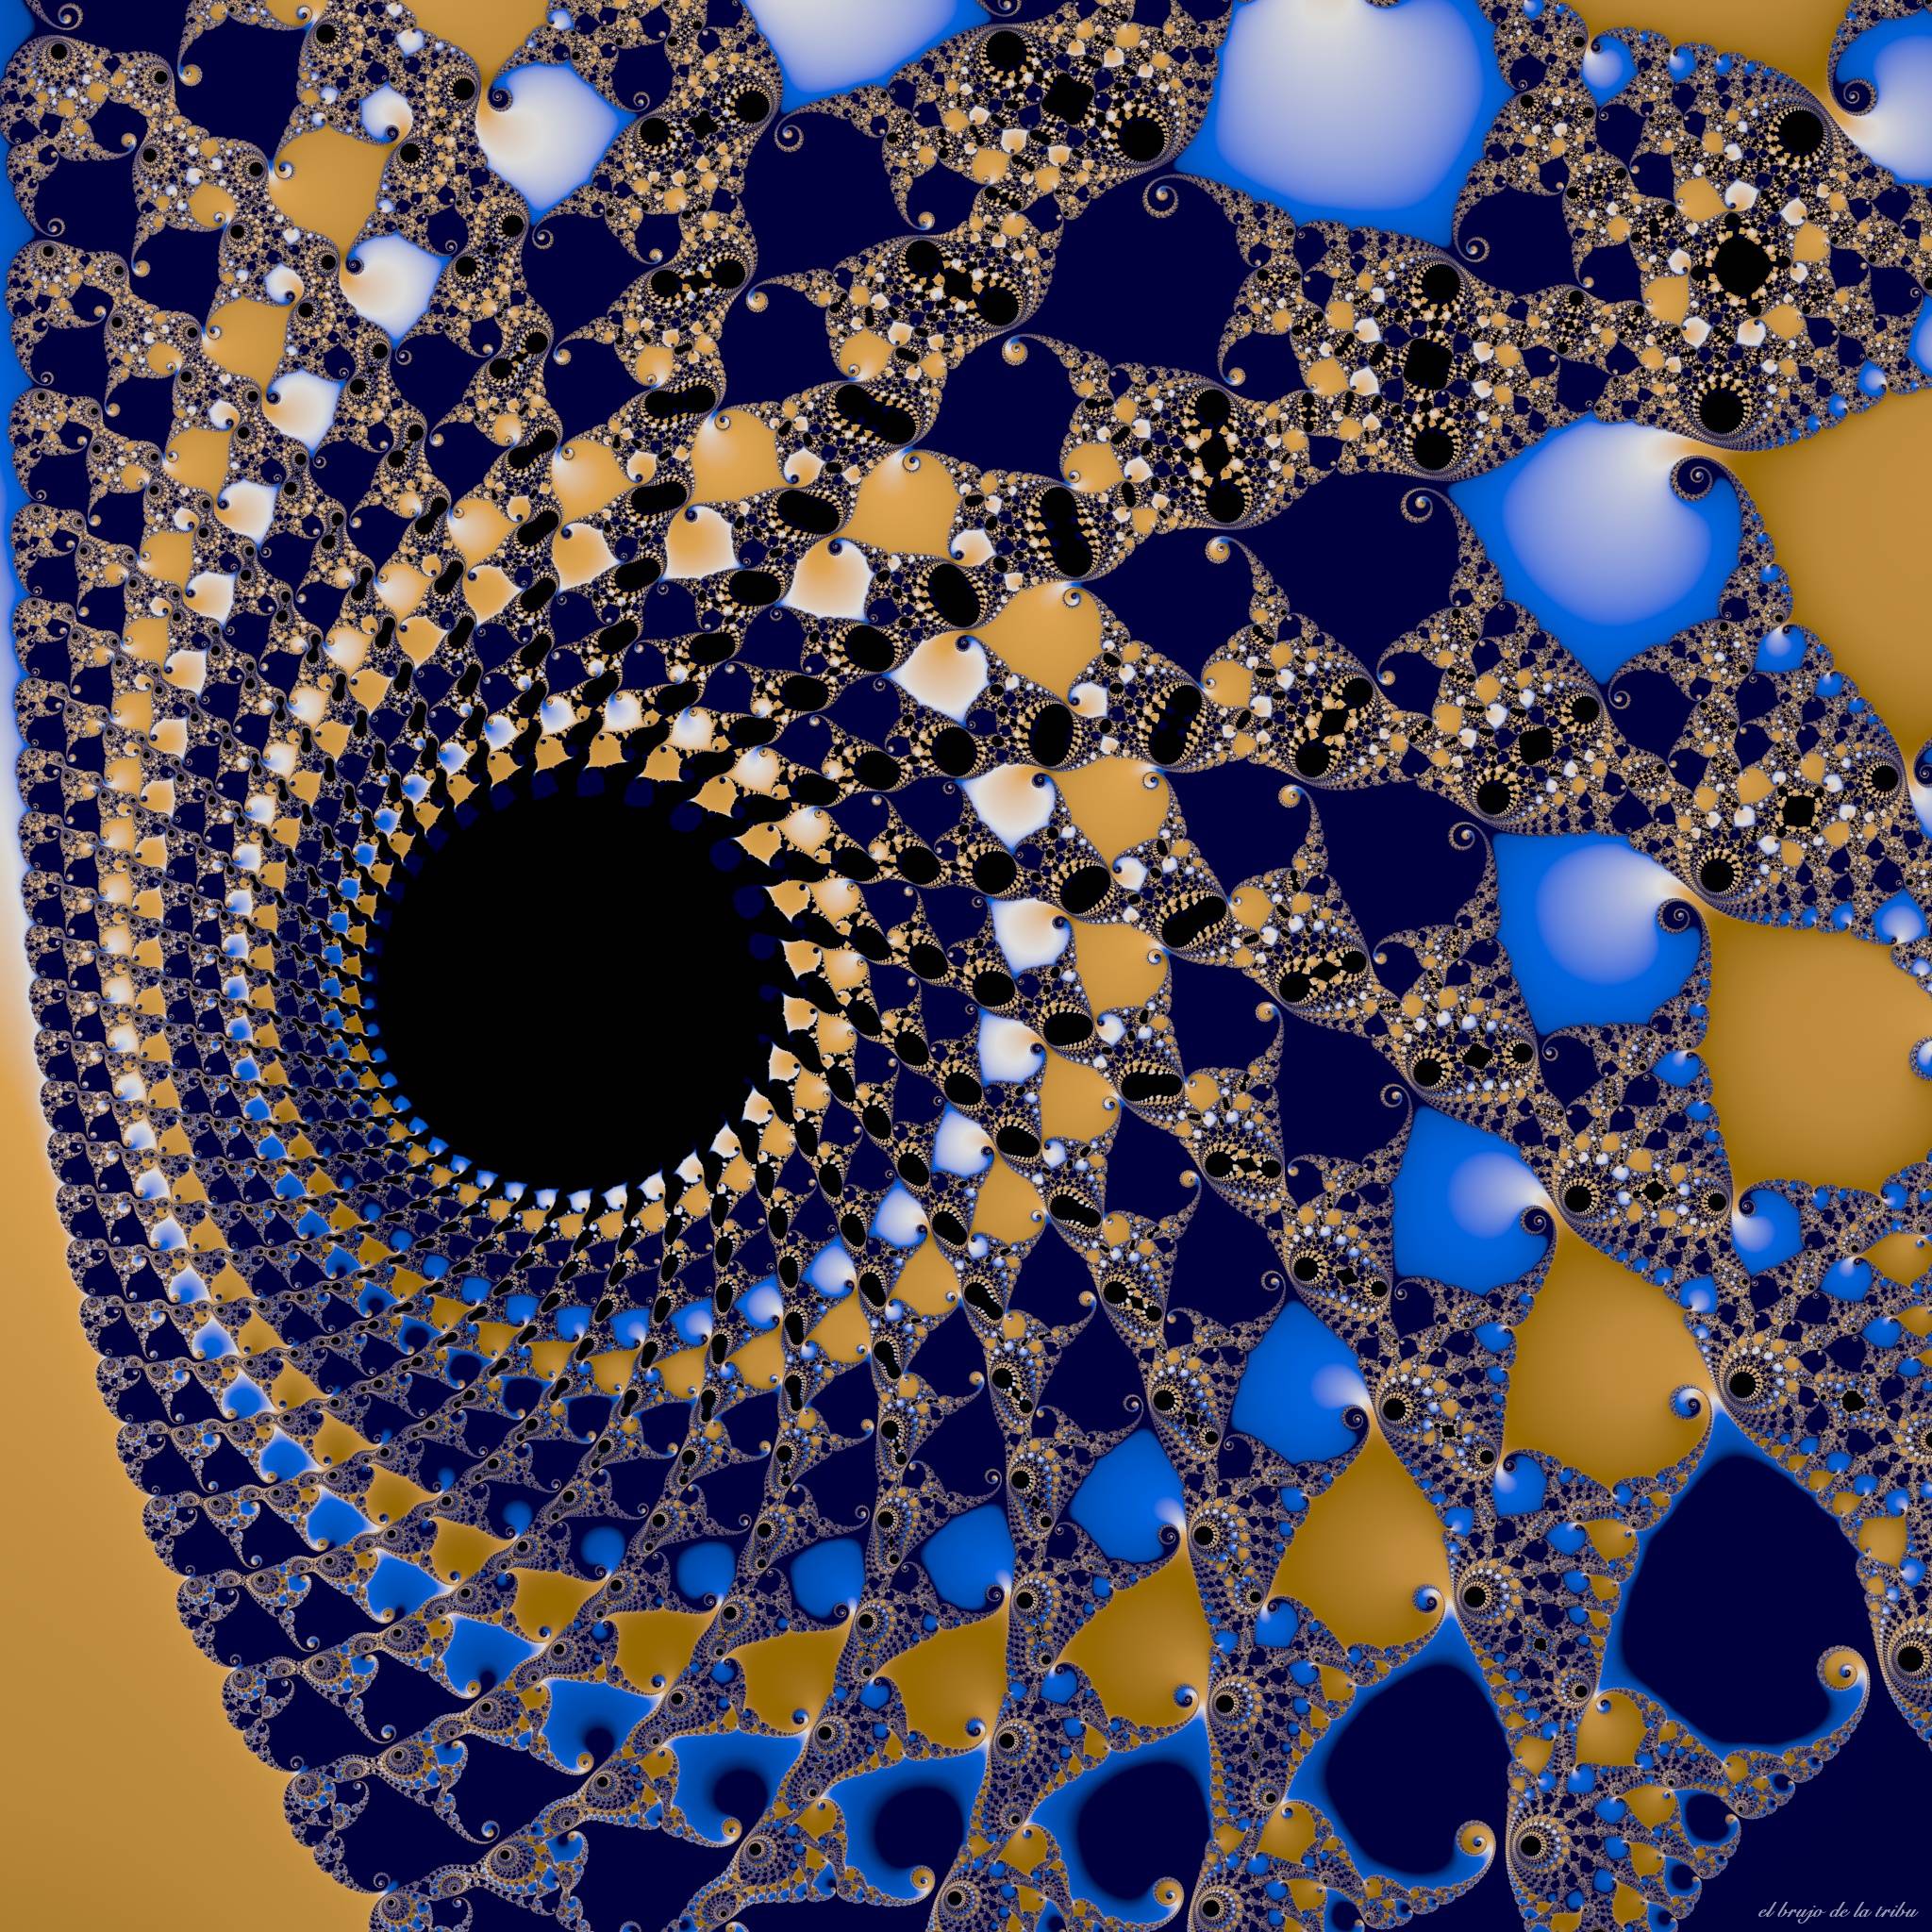 image For > Fractal Geometry Mandelbrot Wallpaper